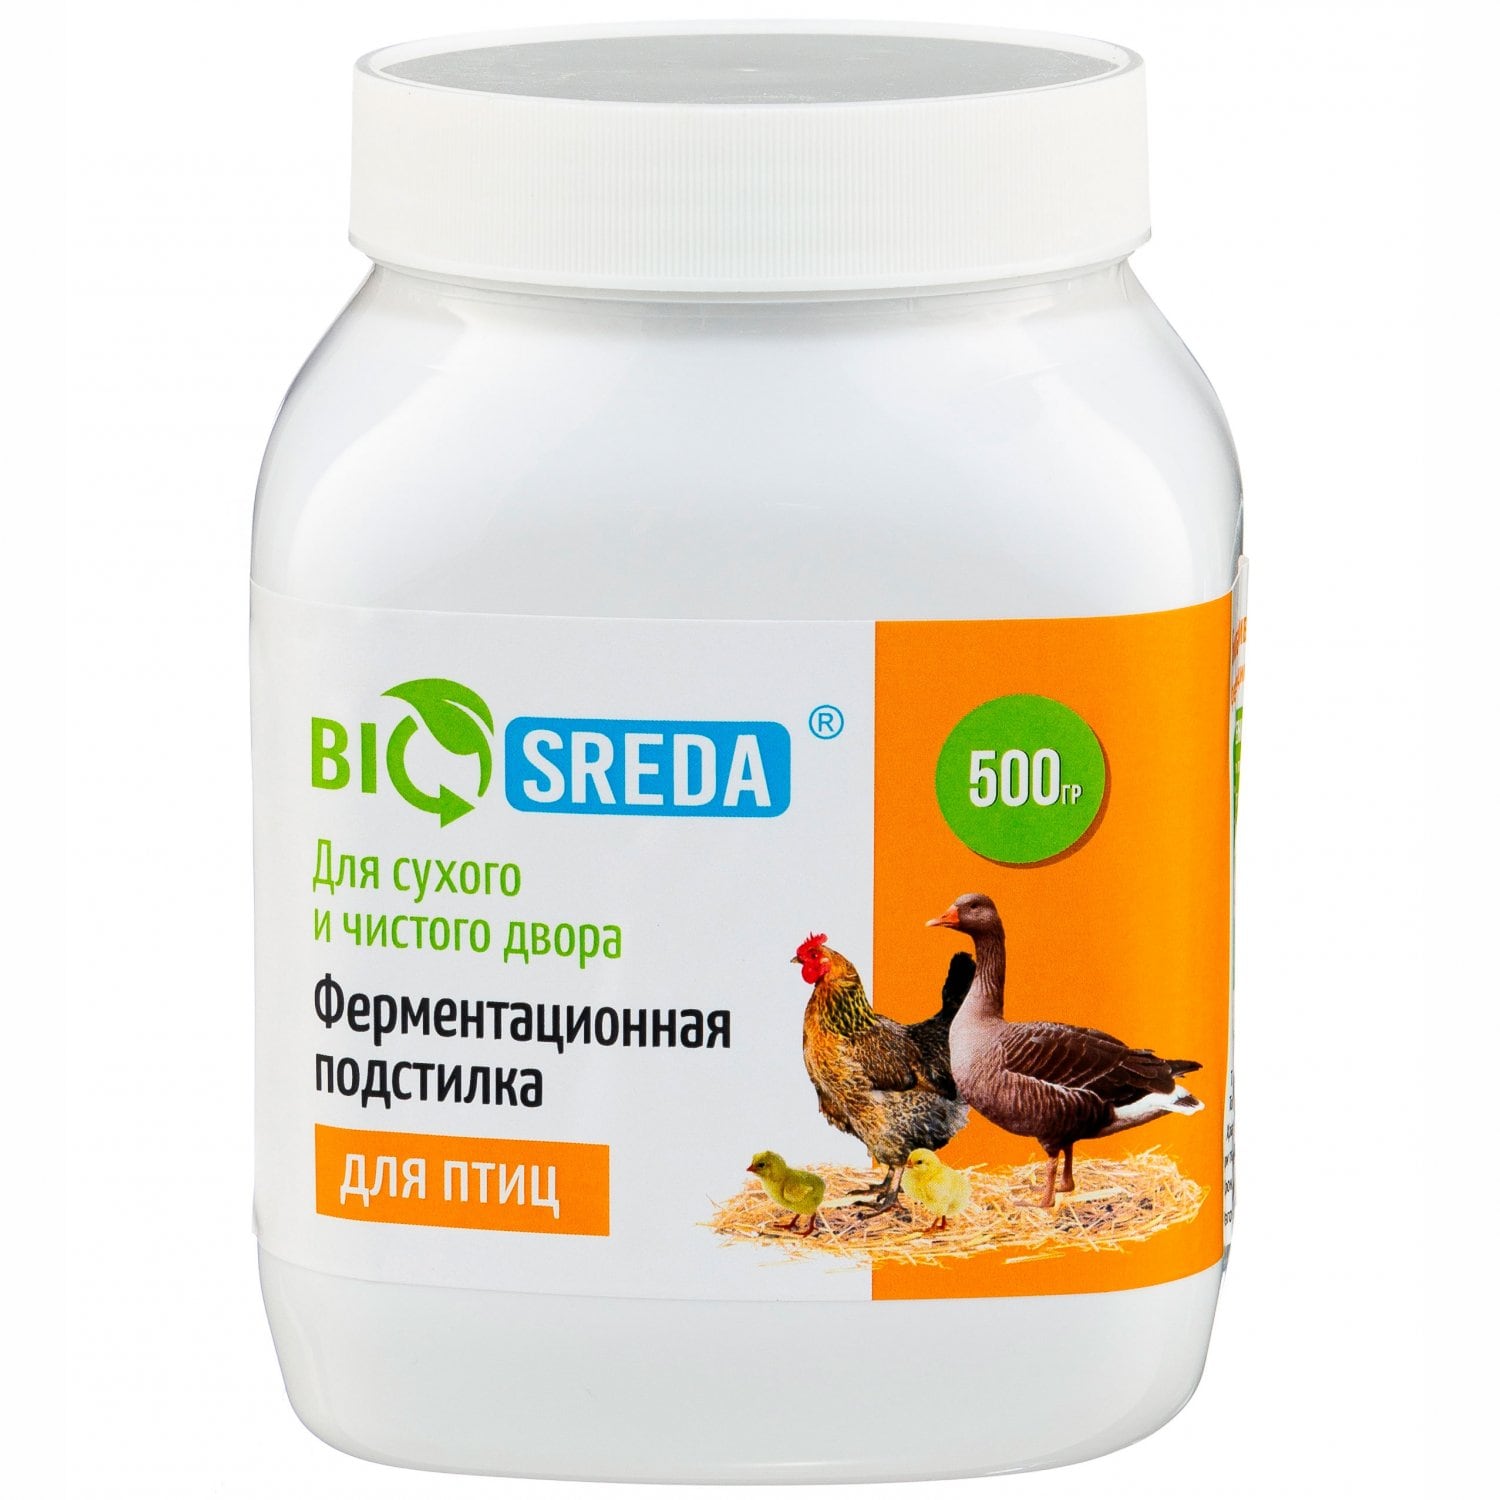 BIOSREDA Ферментационная подстилка для птиц 500гр